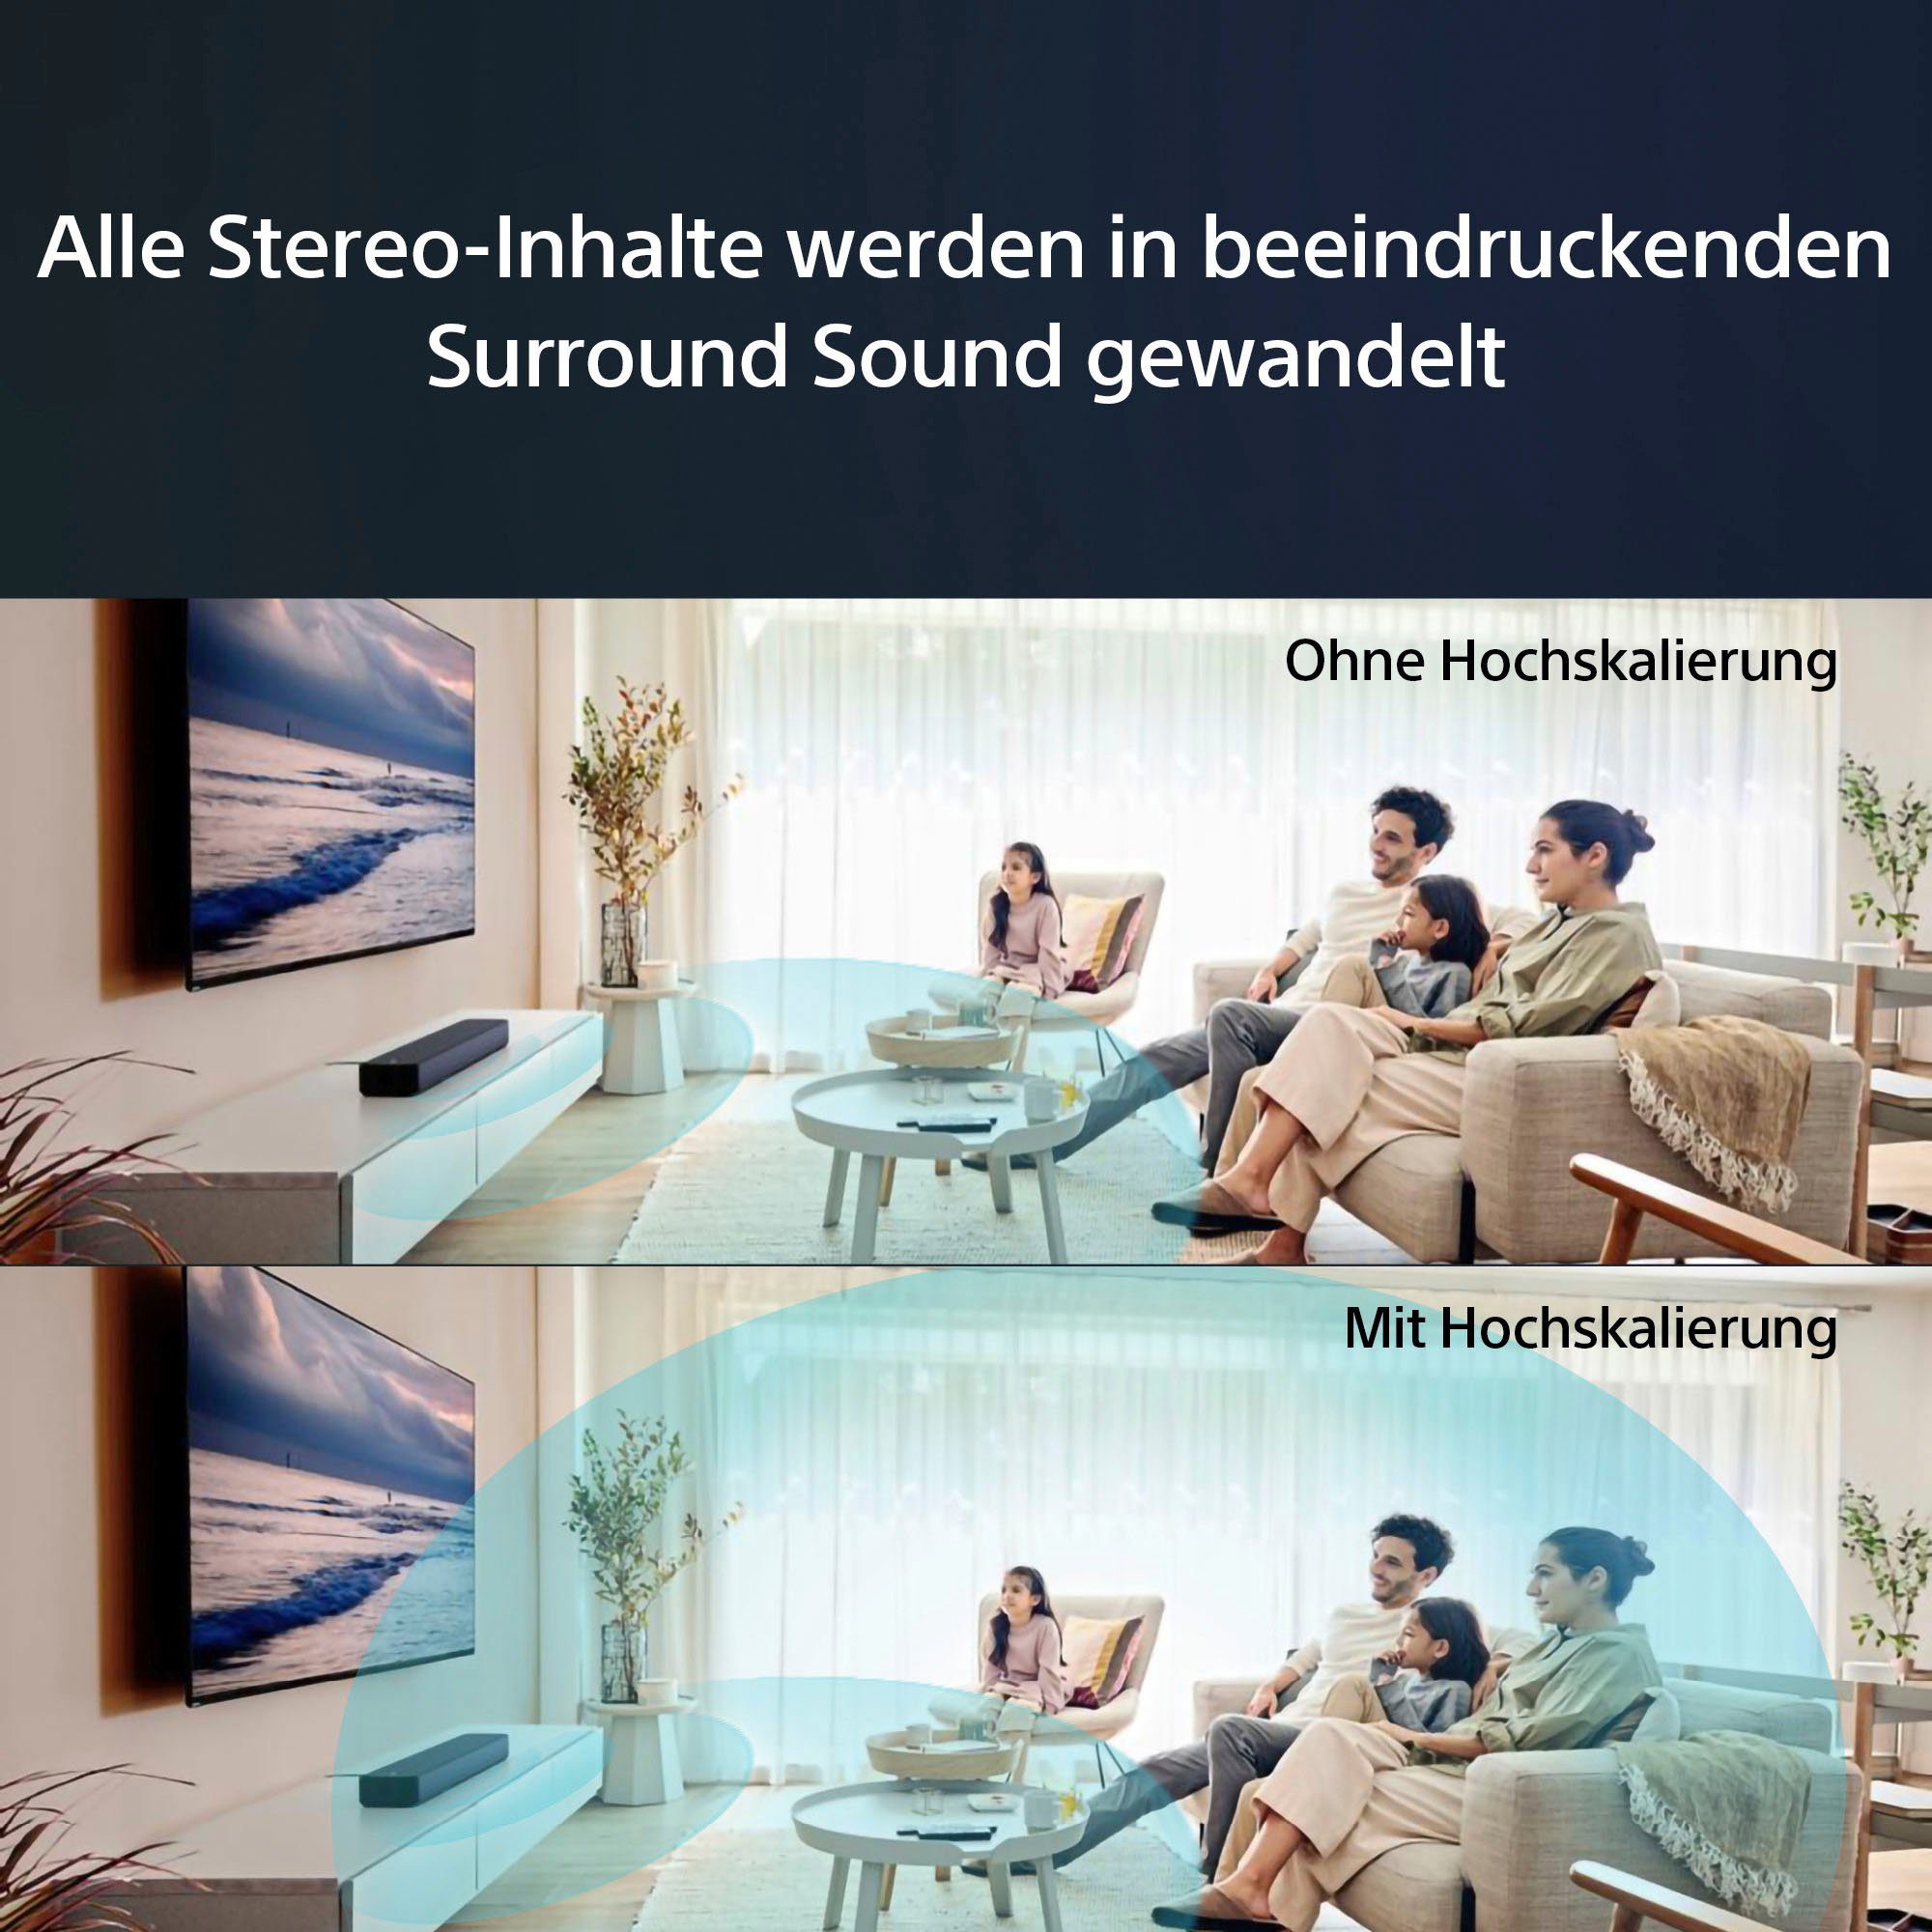 250 Atmos® Soundbar HTS2000 Dolby Sony W, WLAN App-Steuerung) 3.1 (Bluetooth, (WiFi),